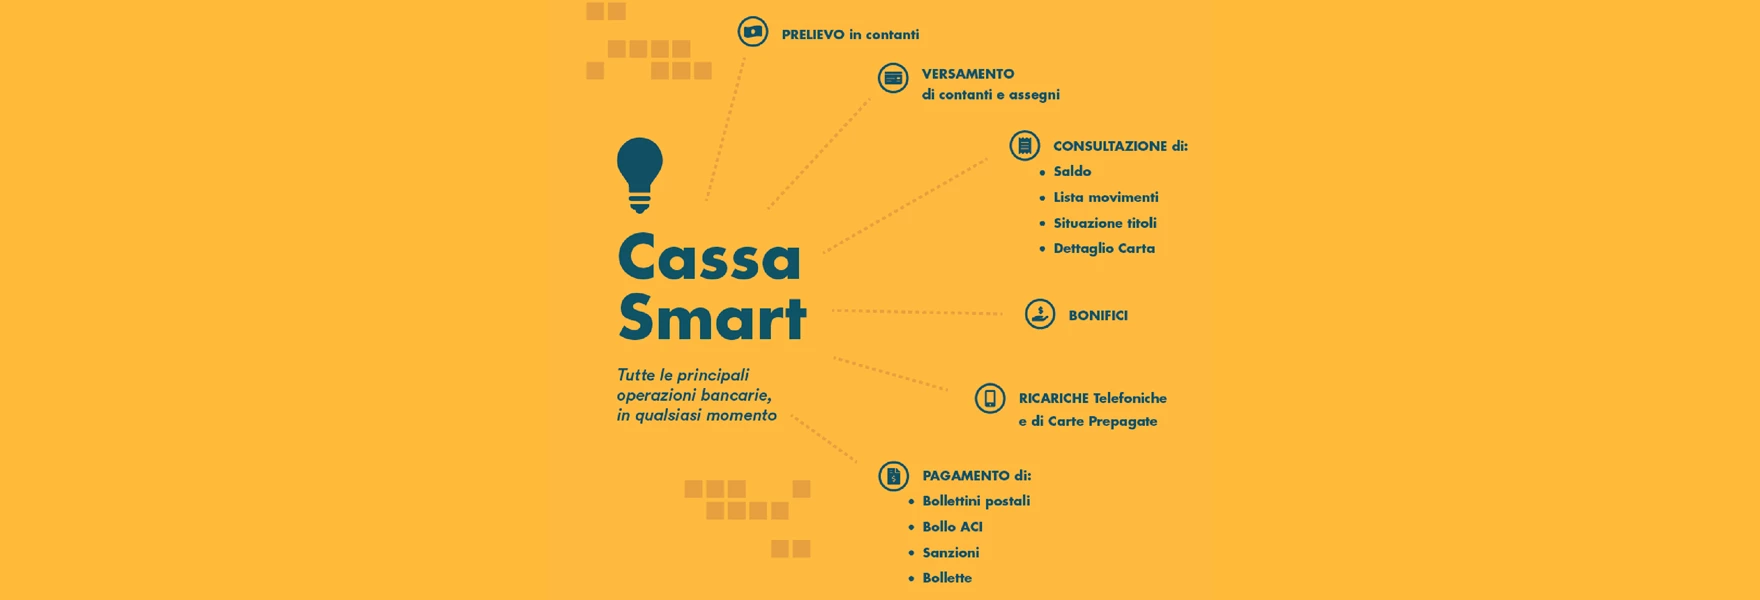 Cassa Smart 